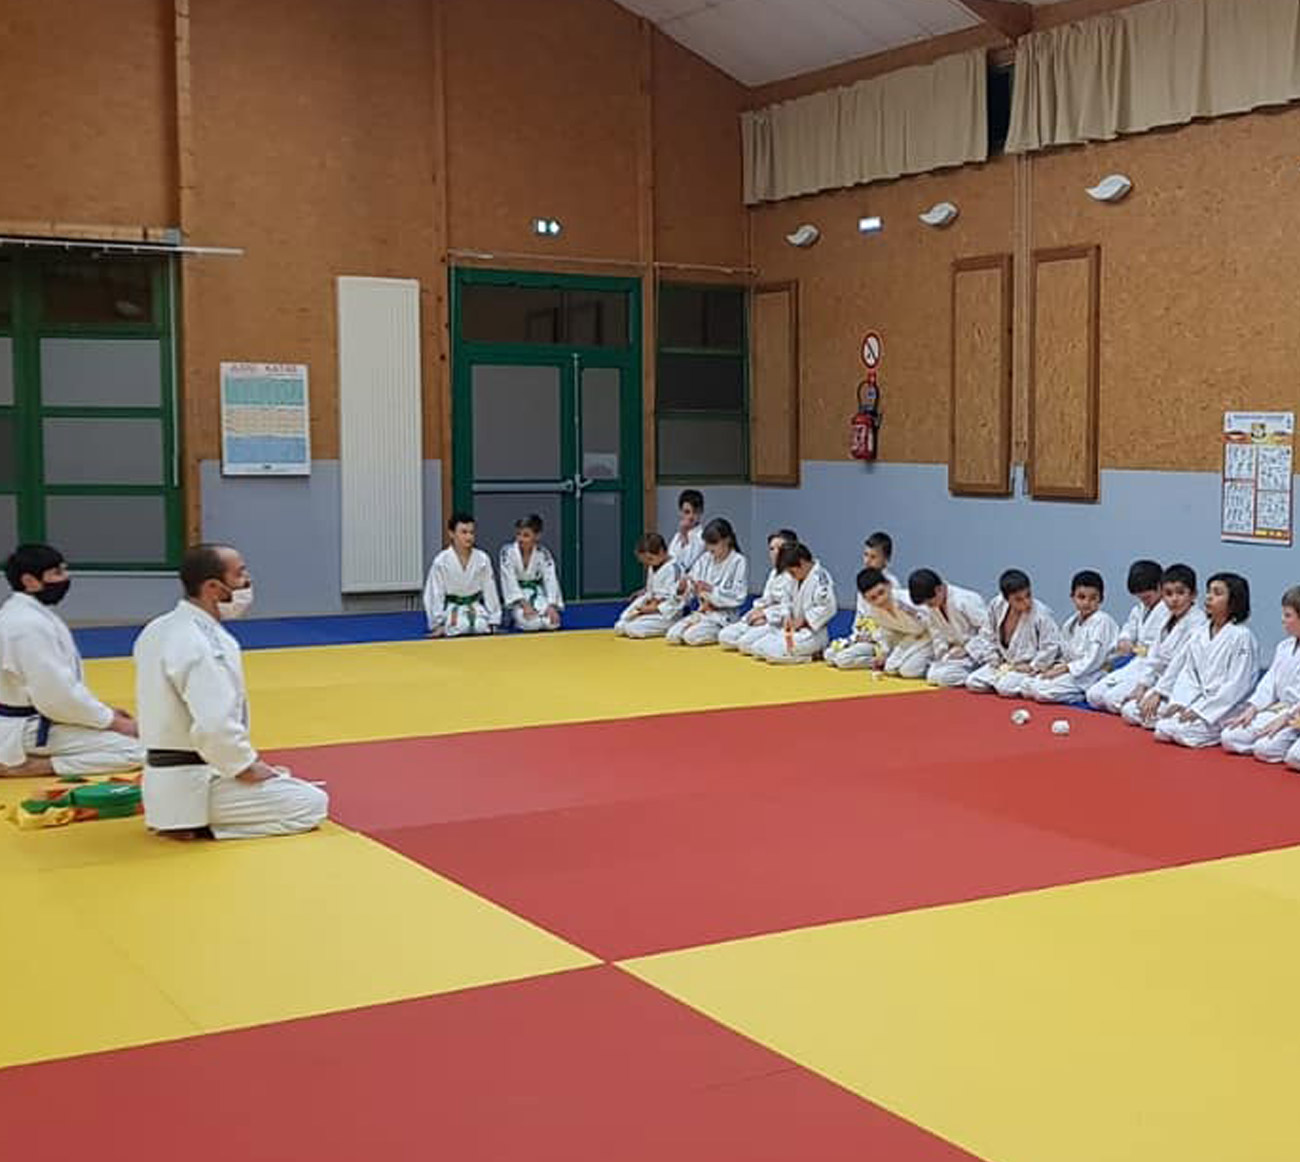 Judo Club de Boigny